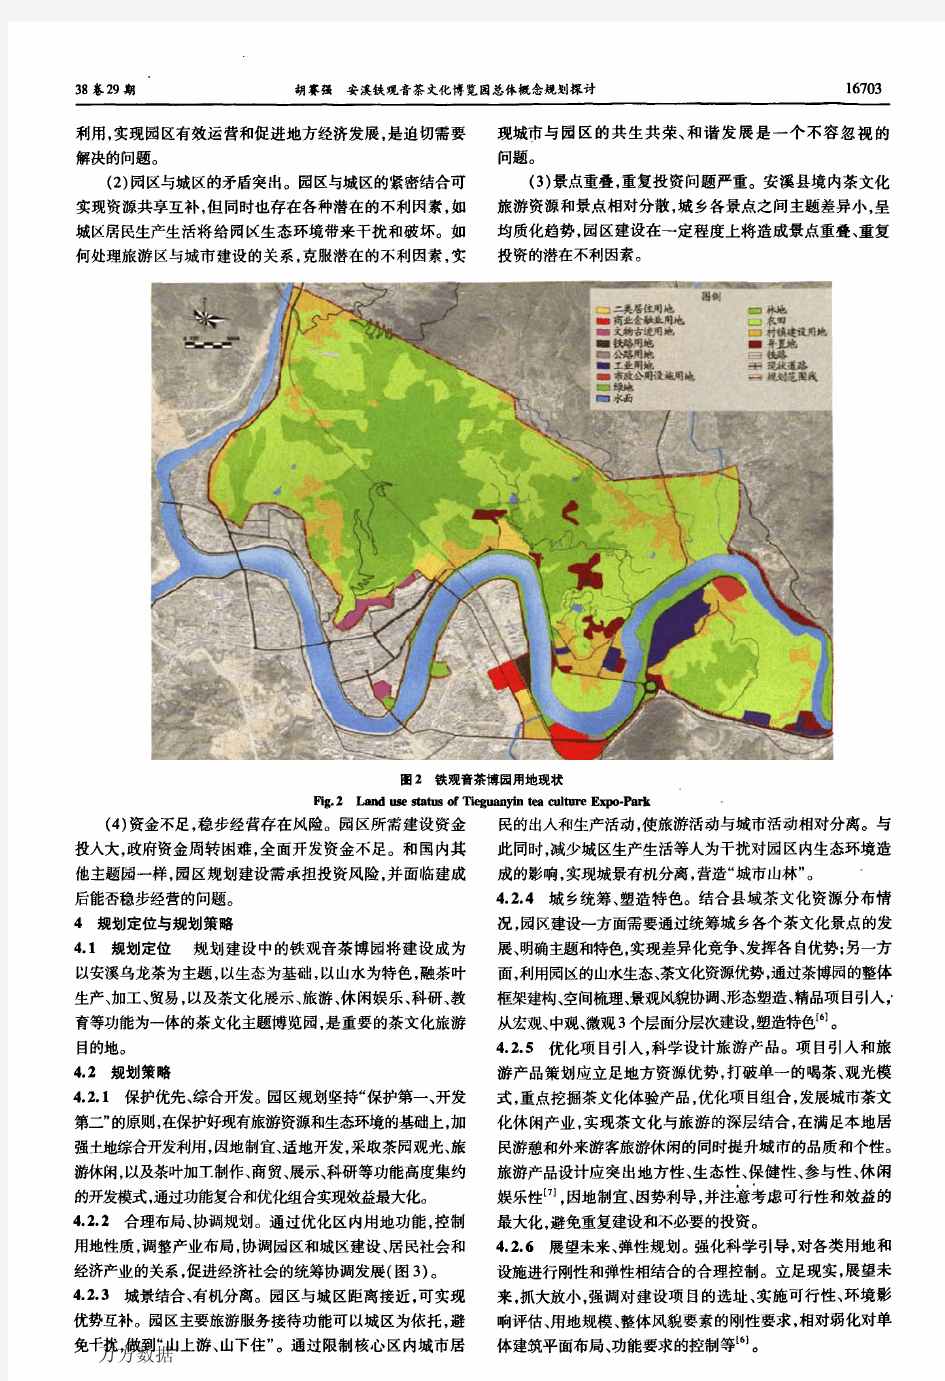 安溪铁观音茶文化博览园总体概念规划探讨